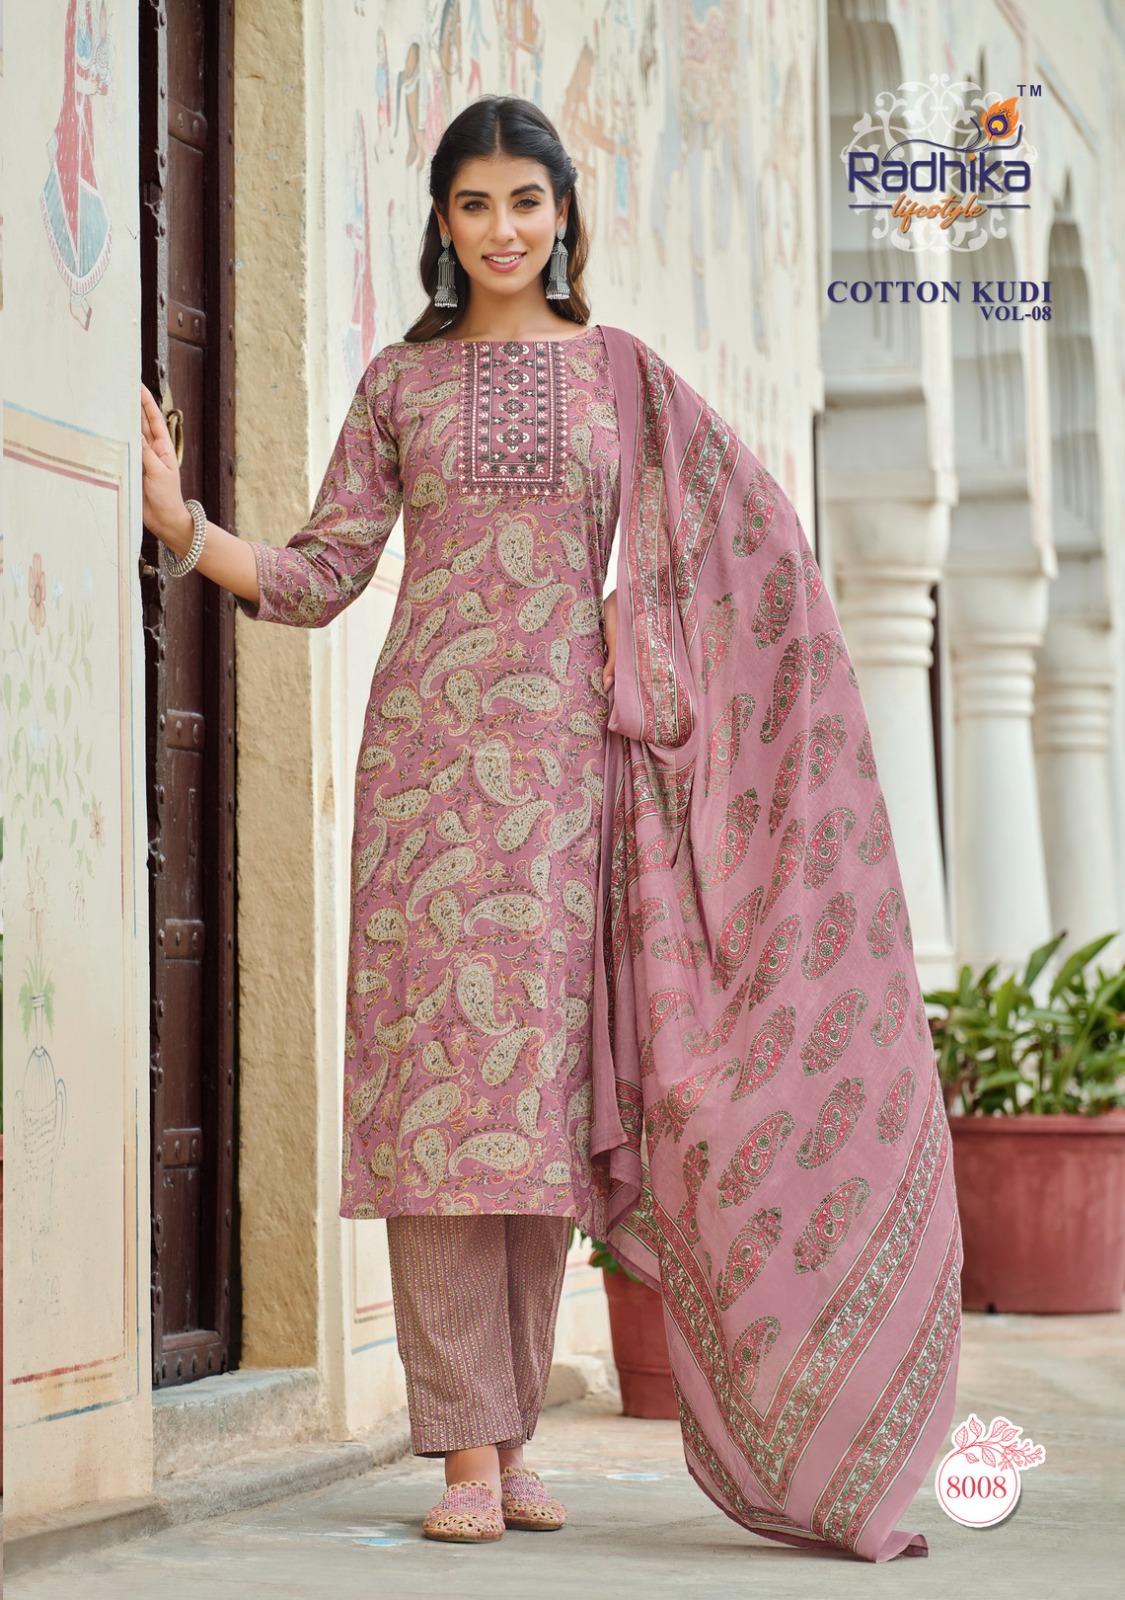 Radhika Cotton Kudi Vol 8 collection 9